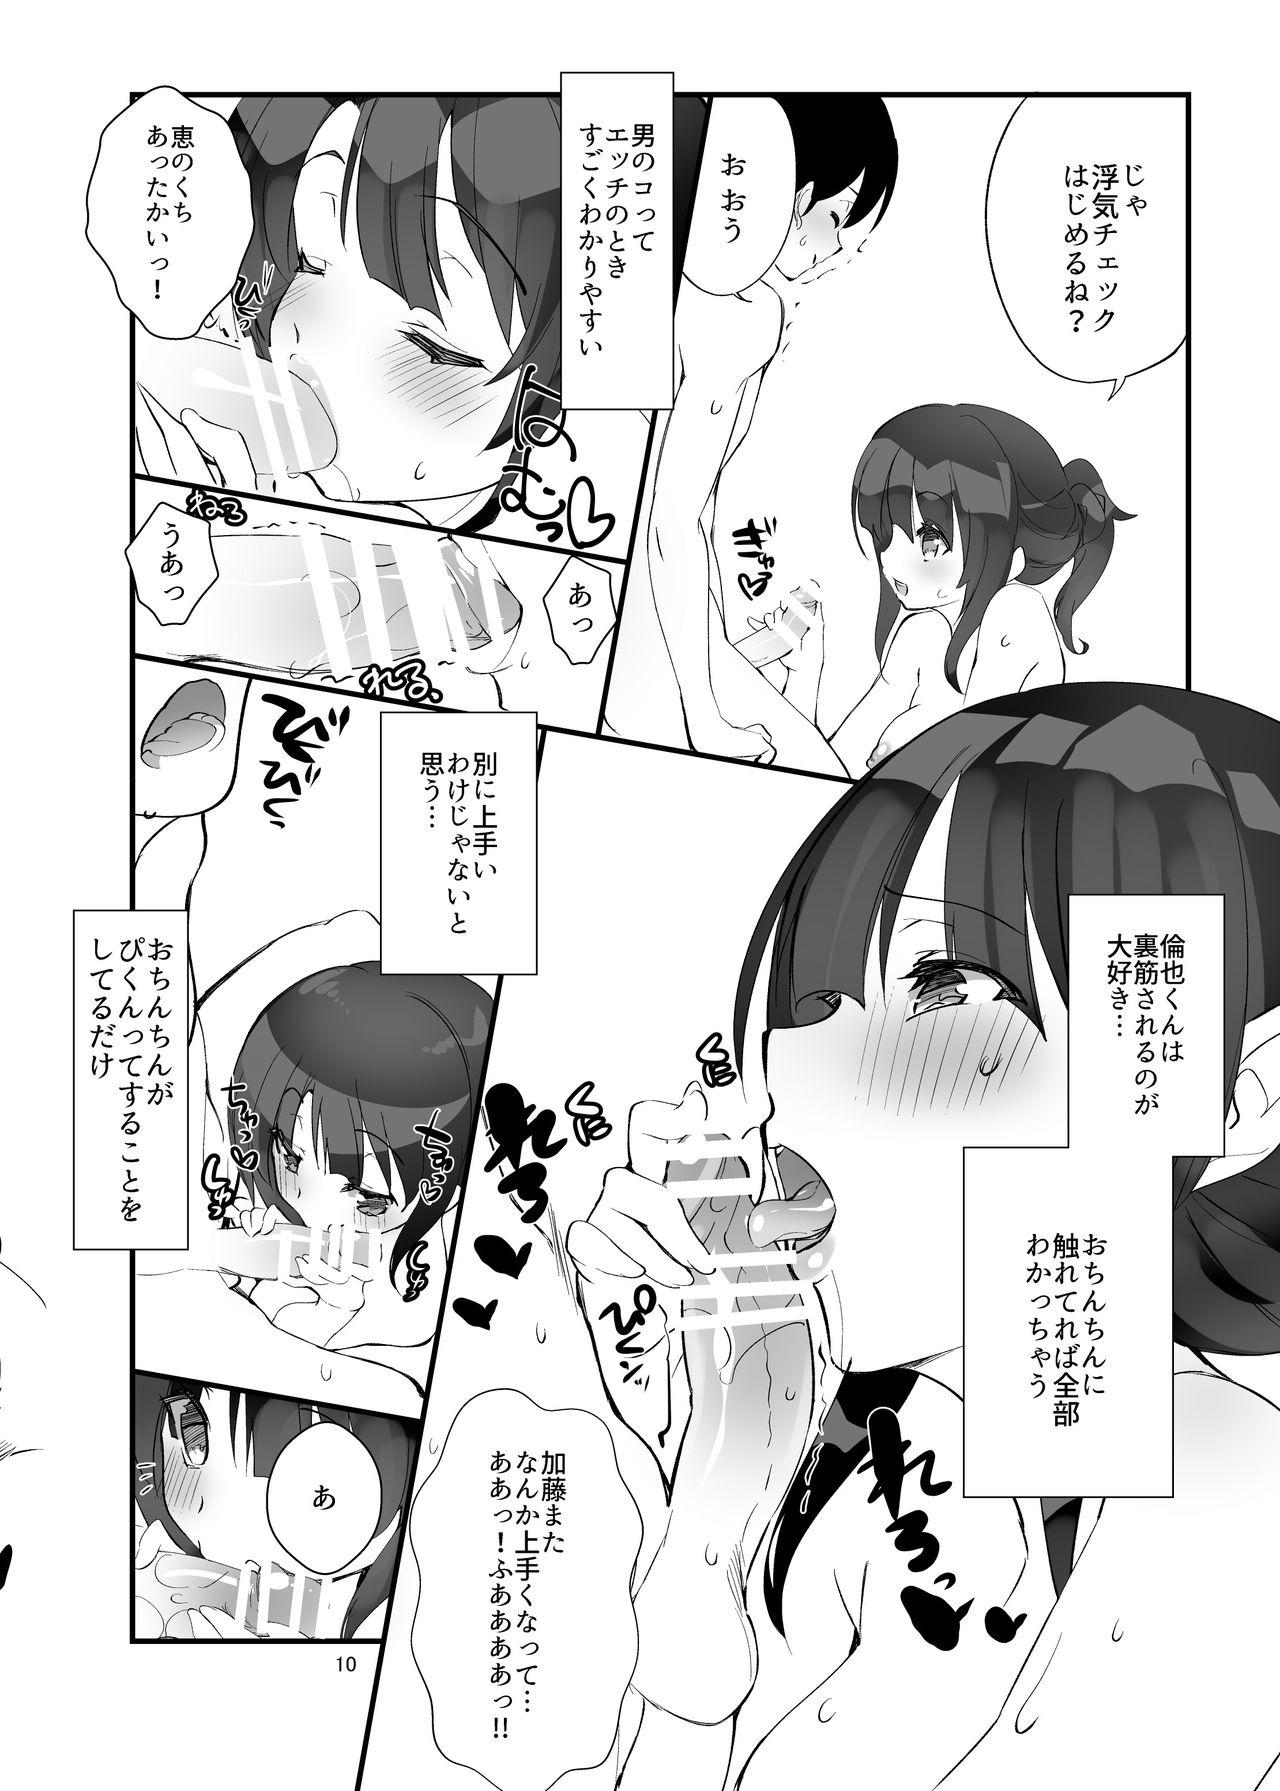 Old Young Futsukano wa Wotakare no Megane o Toru. 3 - Saenai heroine no sodatekata Harcore - Page 10